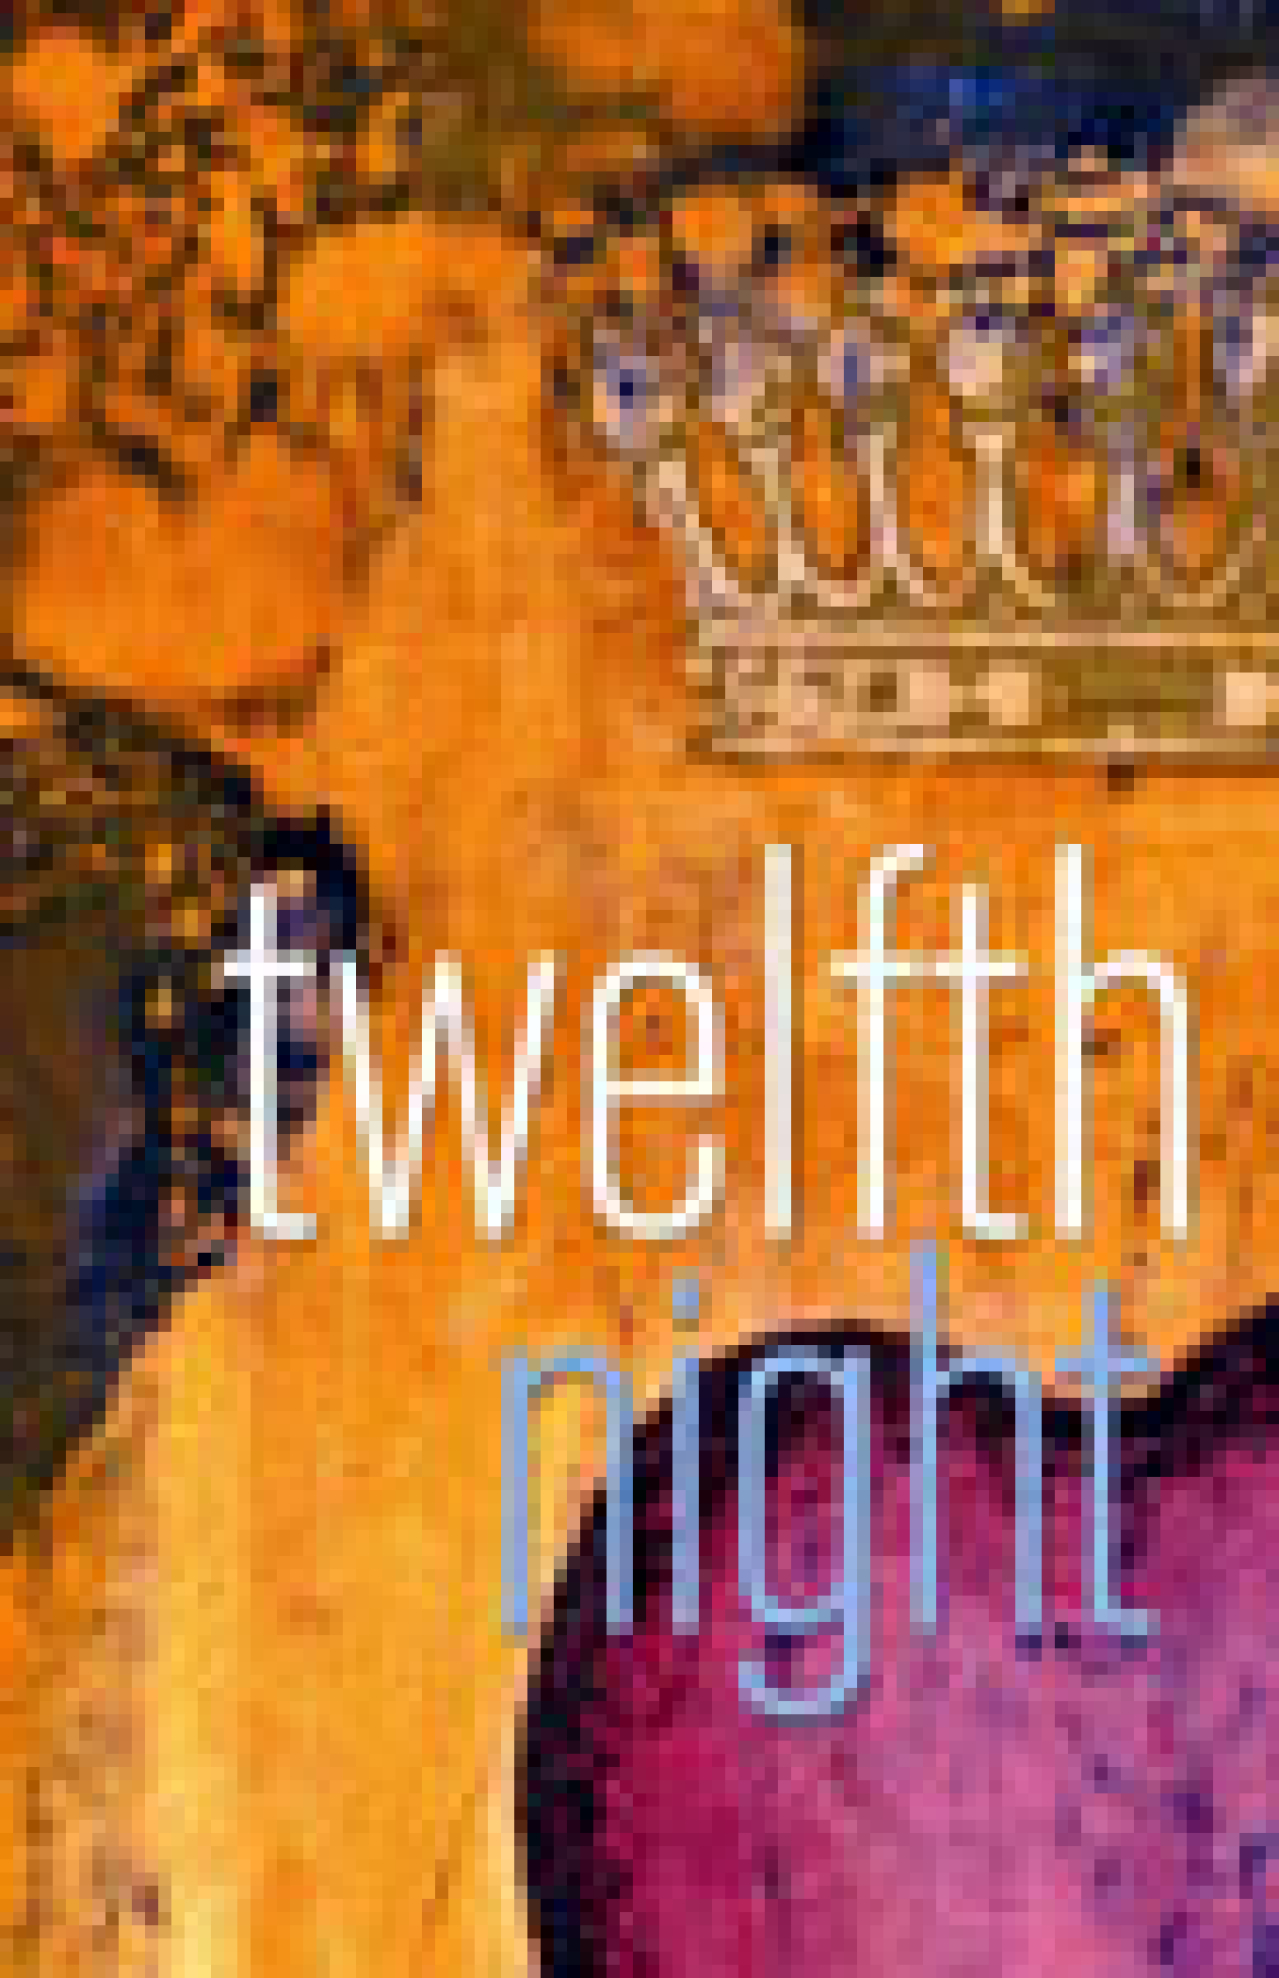 twelfth night logo 3773